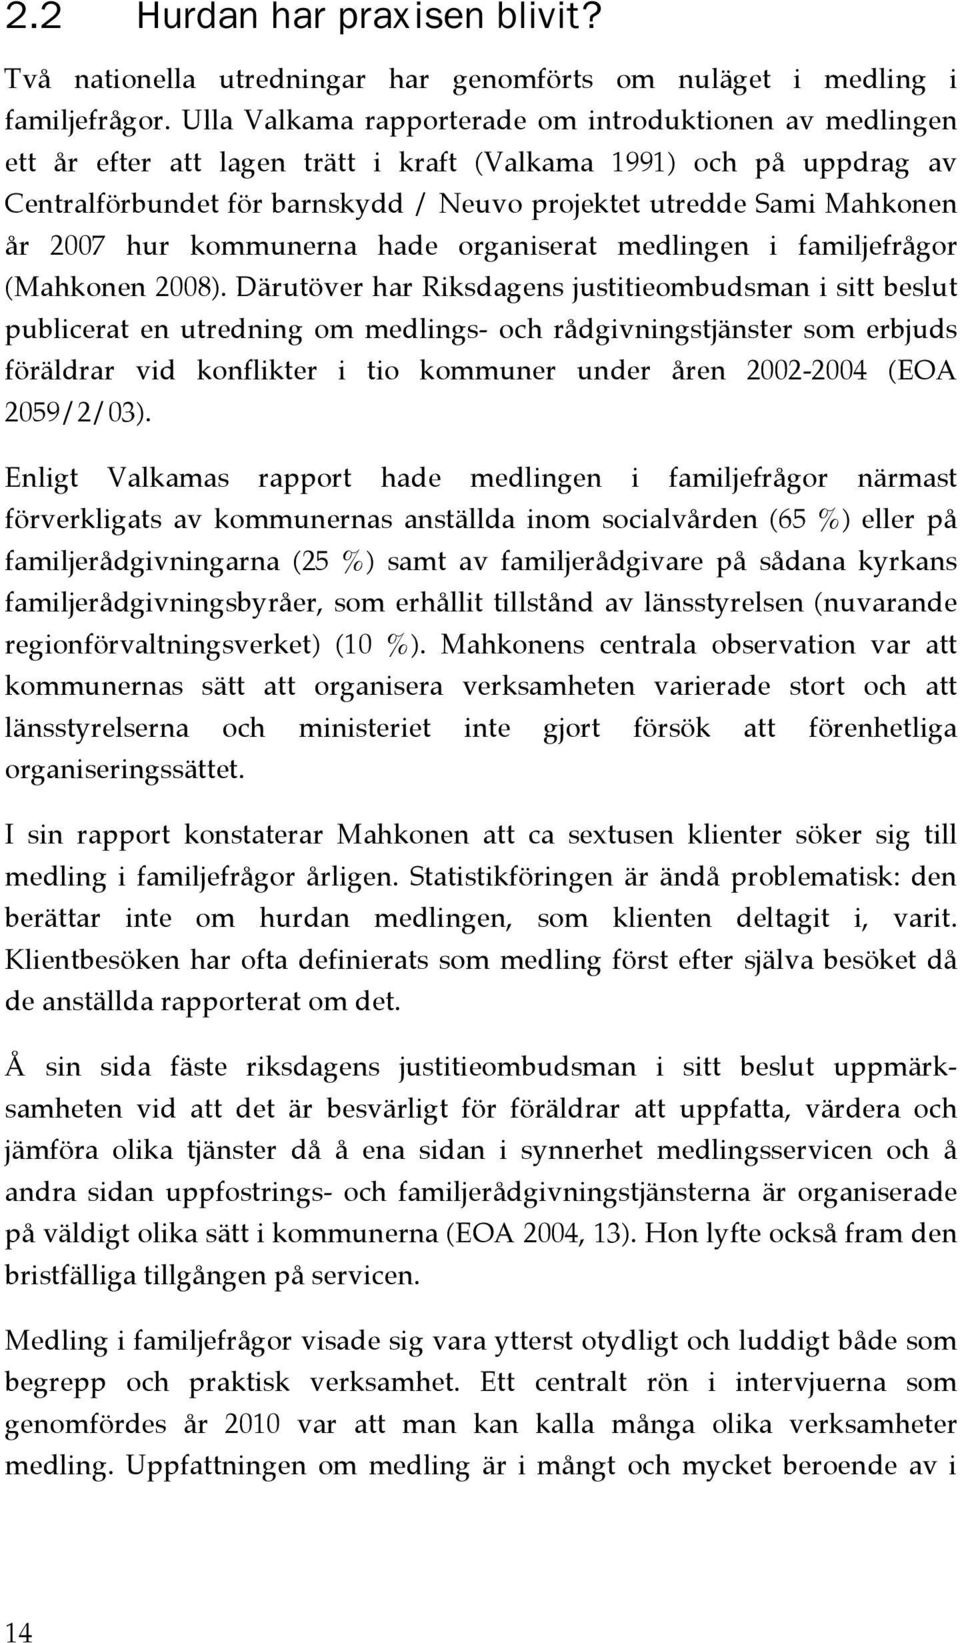 år 2007 hur kommunerna hade organiserat medlingen i familjefrågor (Mahkonen 2008).